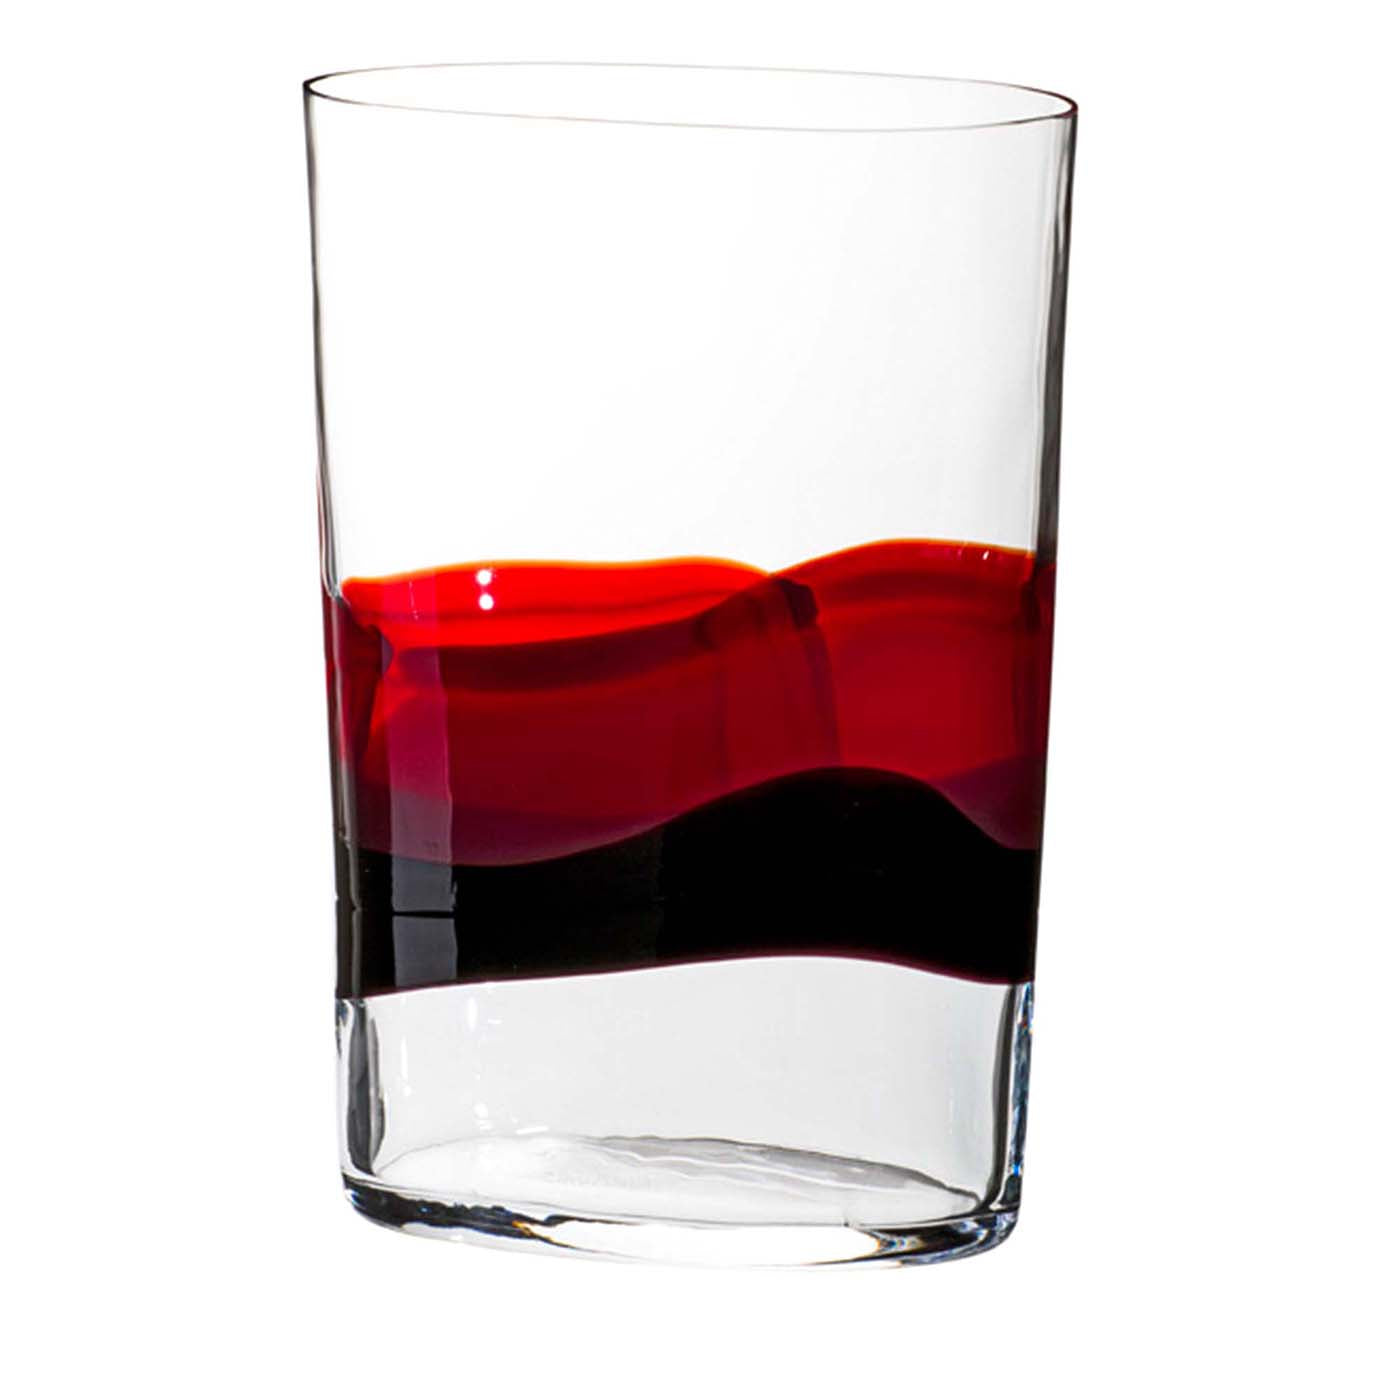 Ovale Rote und schwarze wellen transparente vase von Carlo Moretti - Hauptansicht